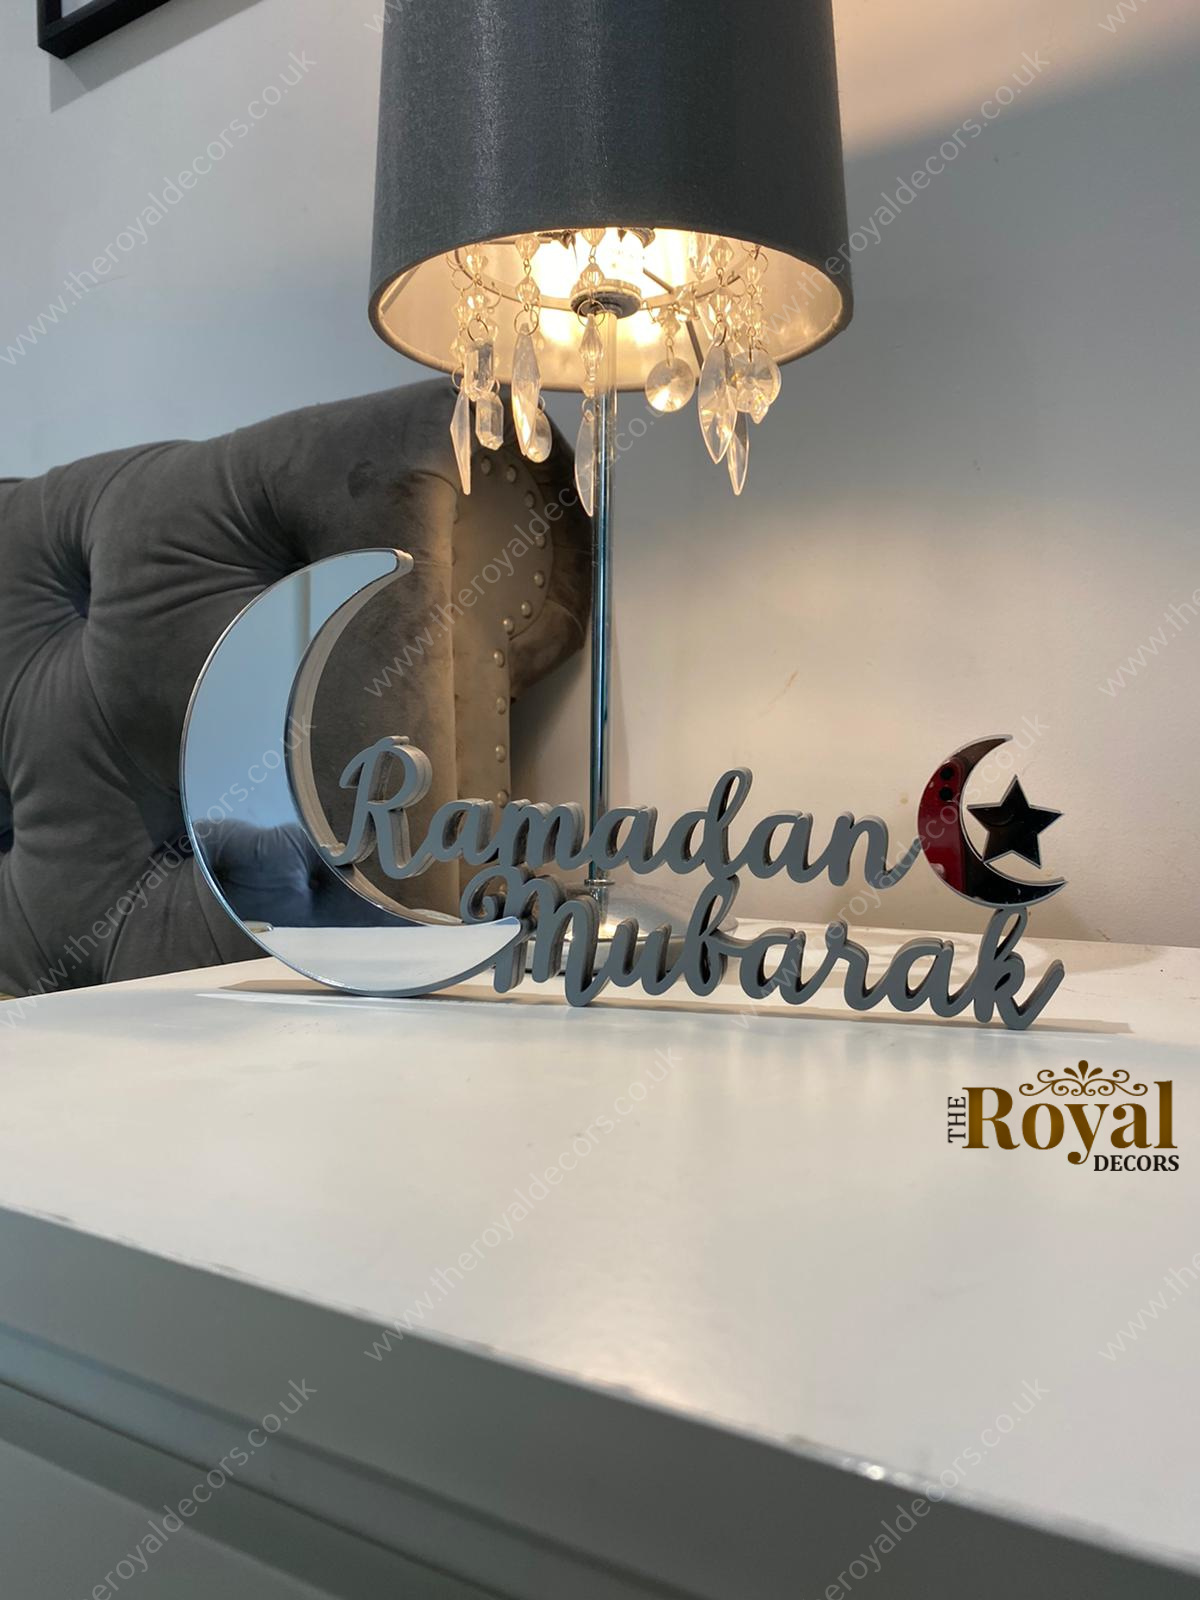 Ramadan Mubarak table decor, ramadan table top art, ramadan decoration, eid decoration, eid mubarak decor, ramadan celebration, ramadan crescent moon decor, blessed ramadan decor